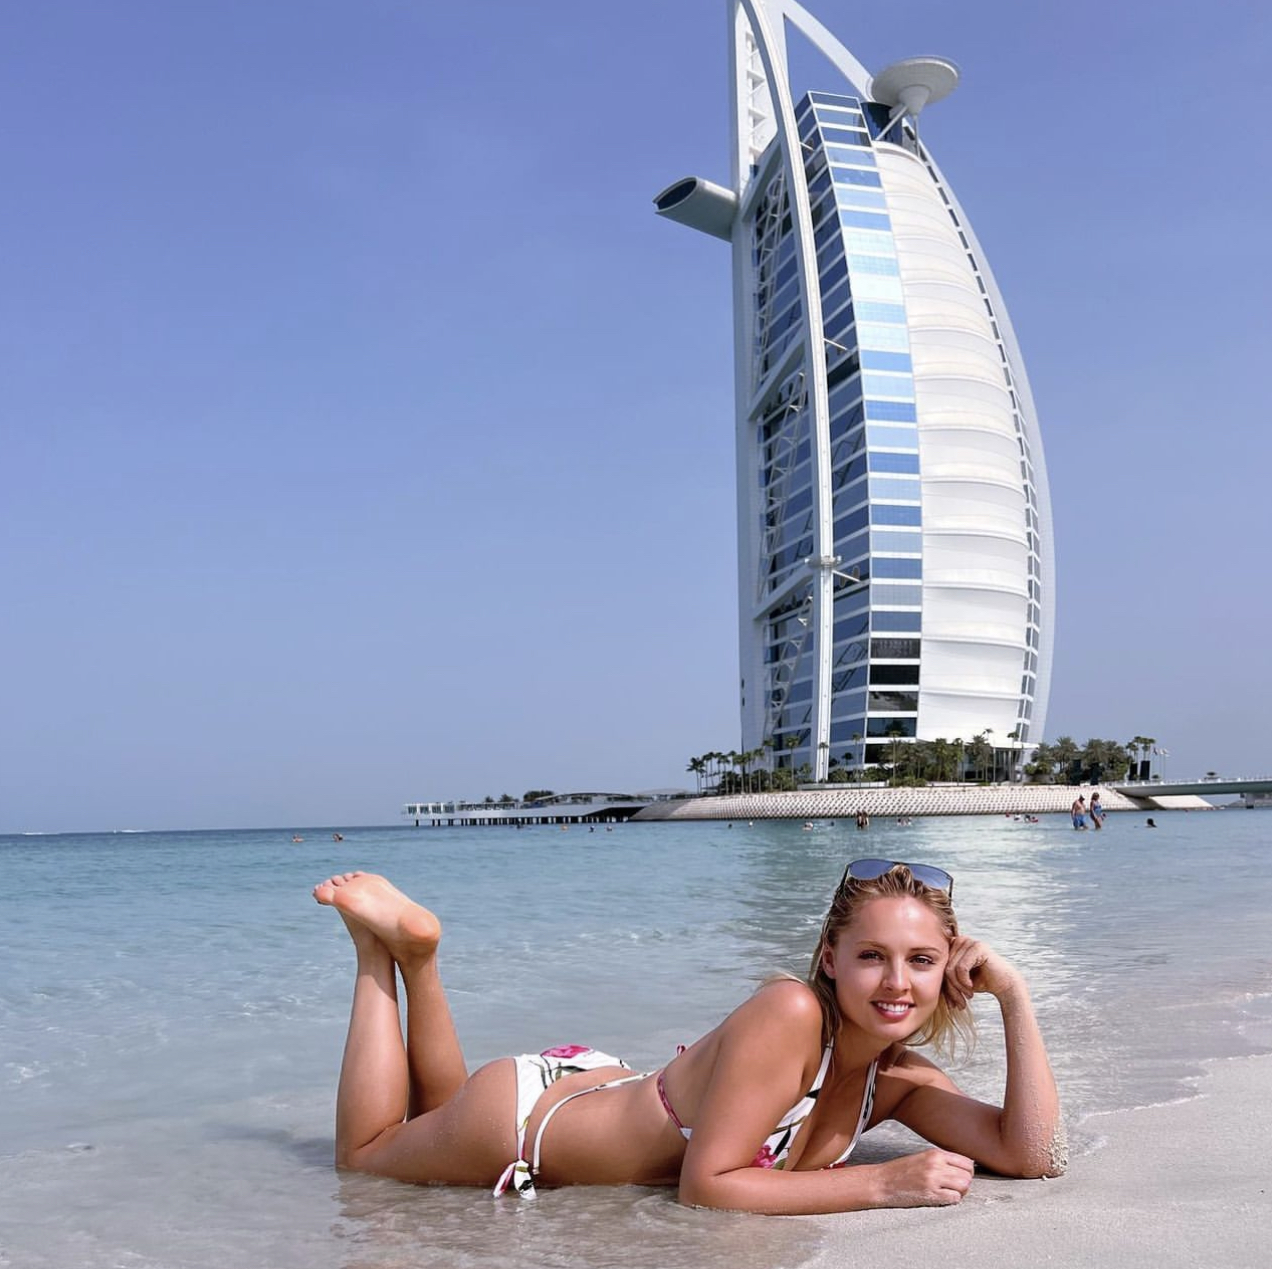 Янина Студилина похвасталась точеной фигурой на отдыхе в Дубае - Первый  женский — новости шоу-бизнеса, культура, Life Style